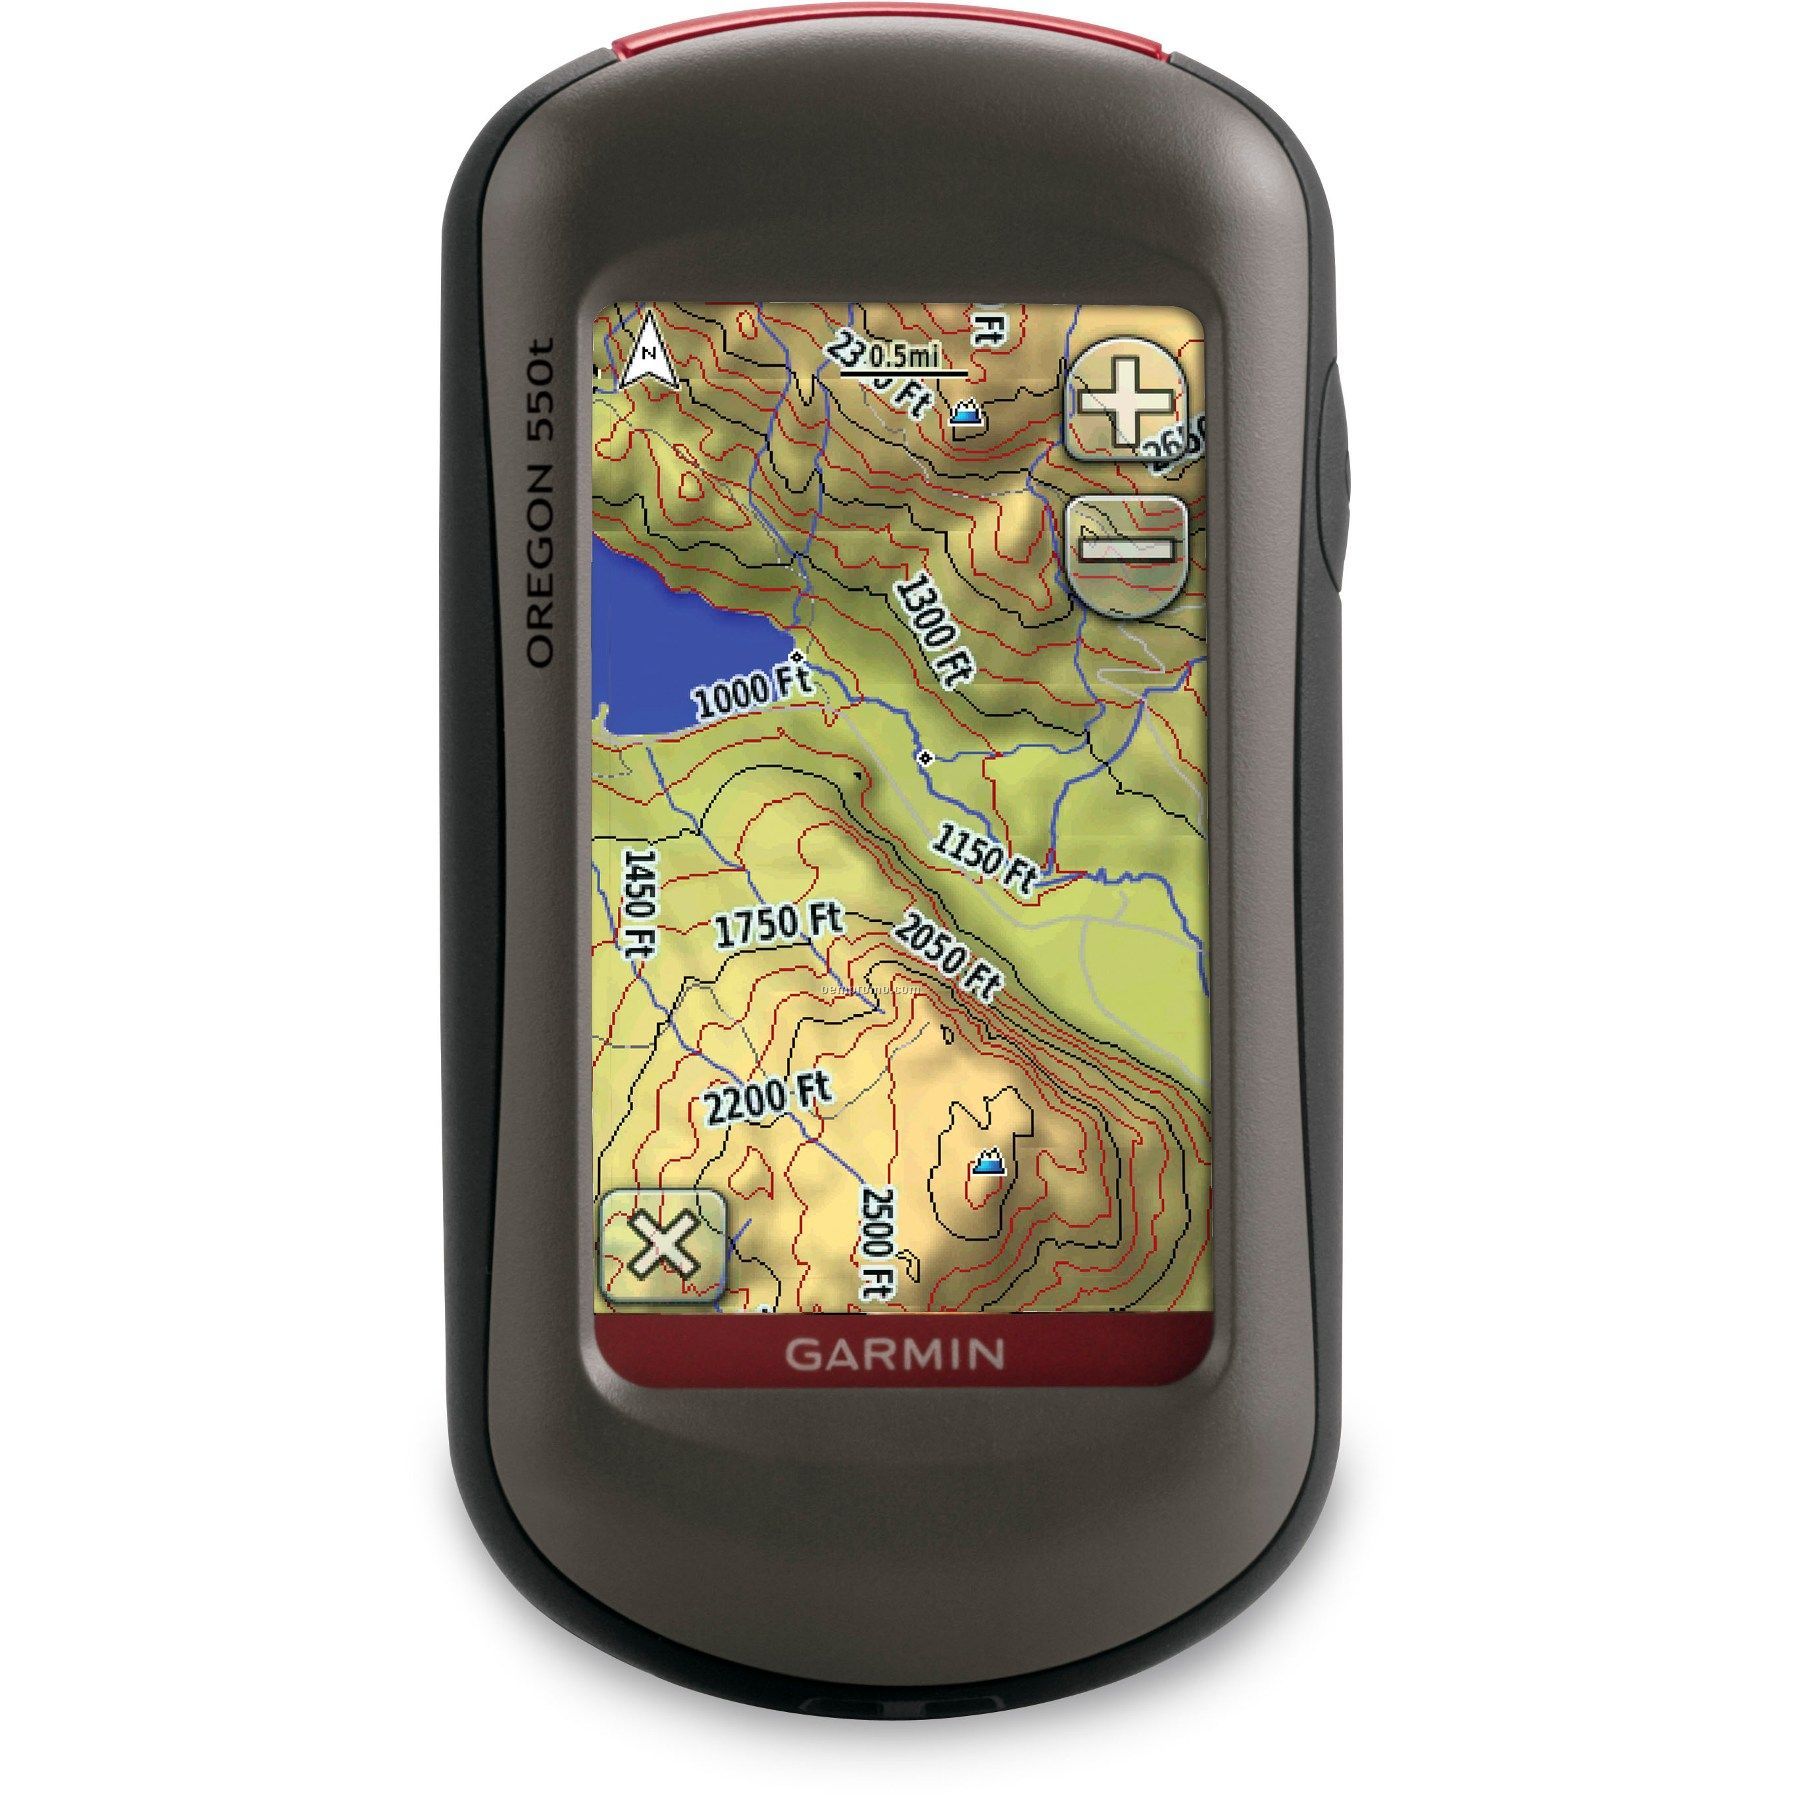 Garmin Gps Mapping Handheld Navigator